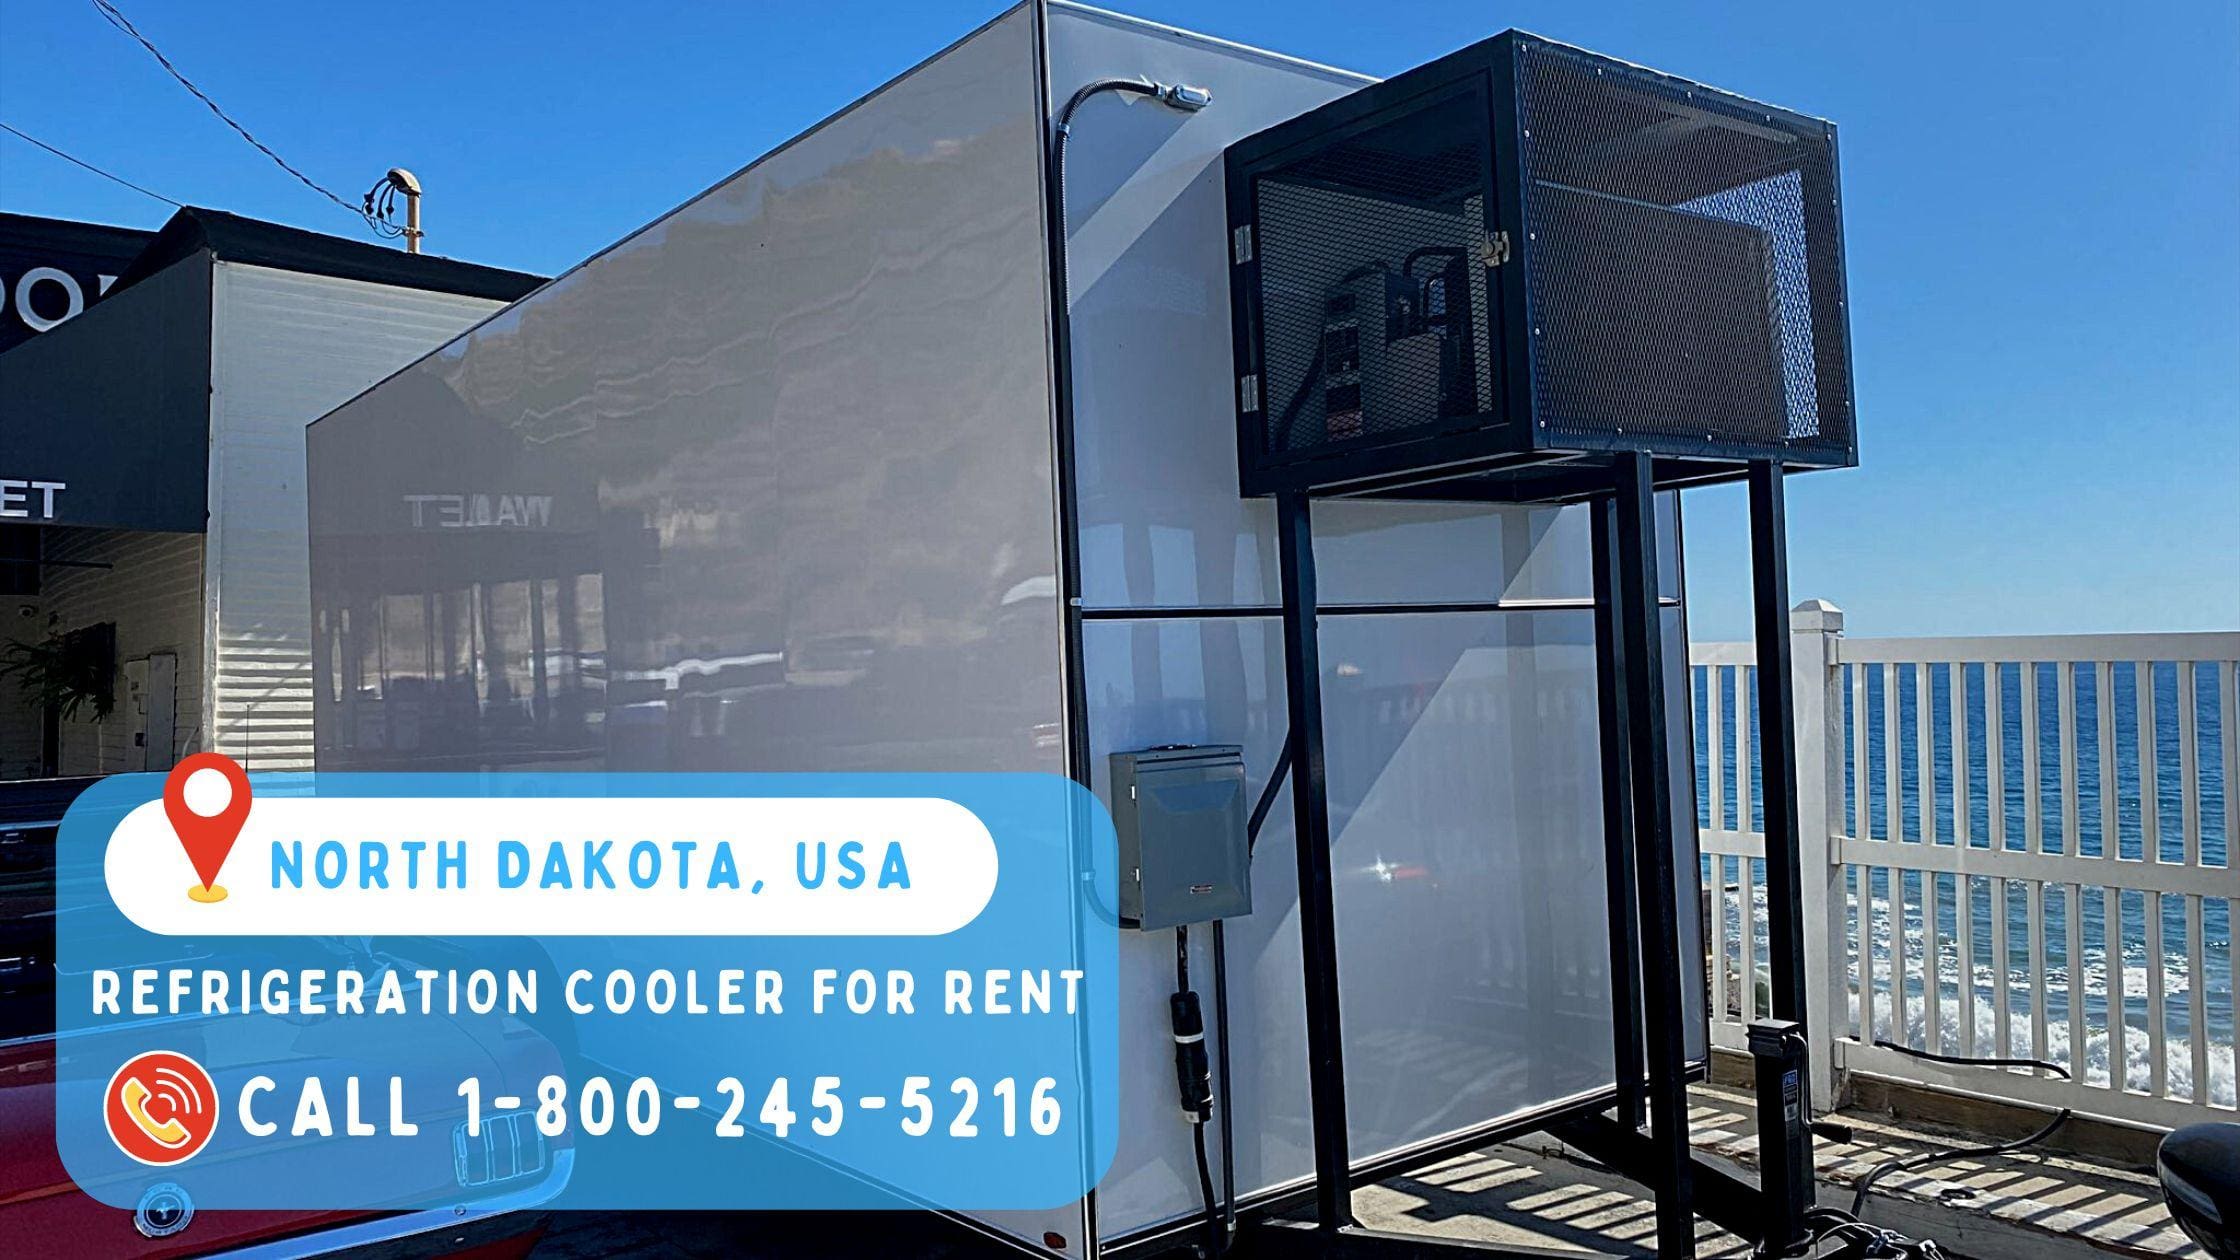 Refrigeration Cooler for Rent in North Dakota